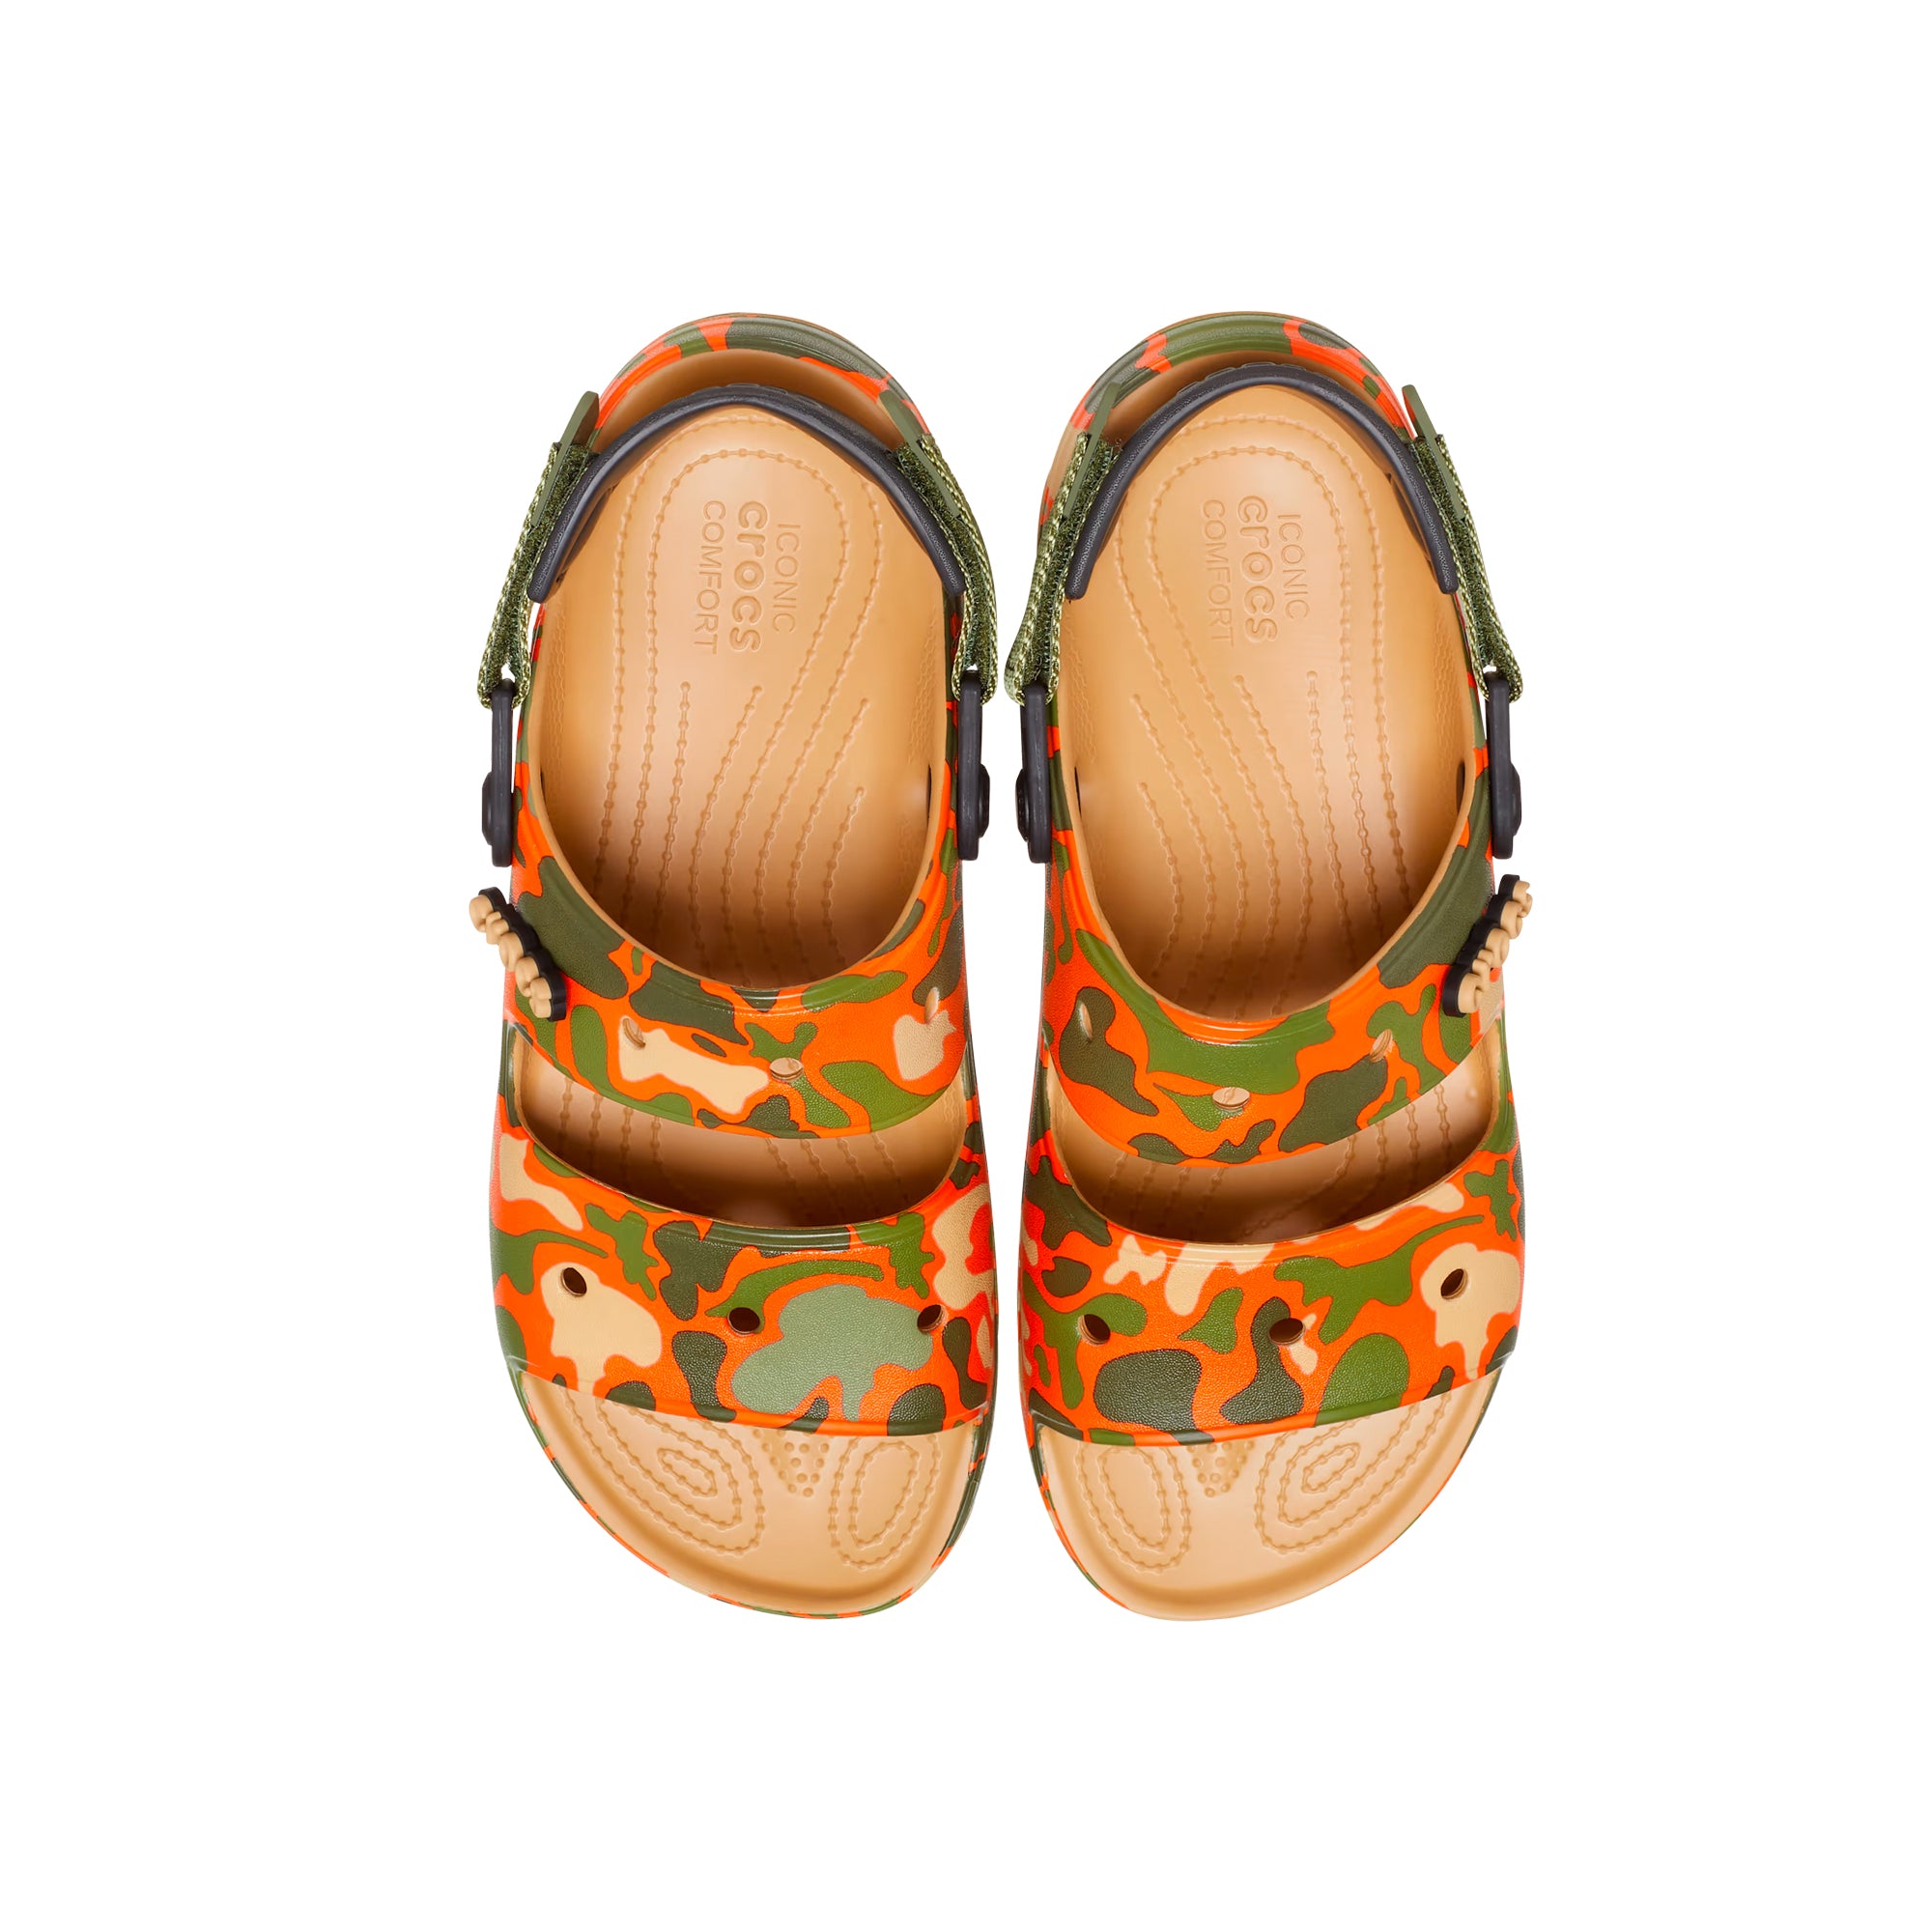 Crocs Classic All Terrain Camo Sandals